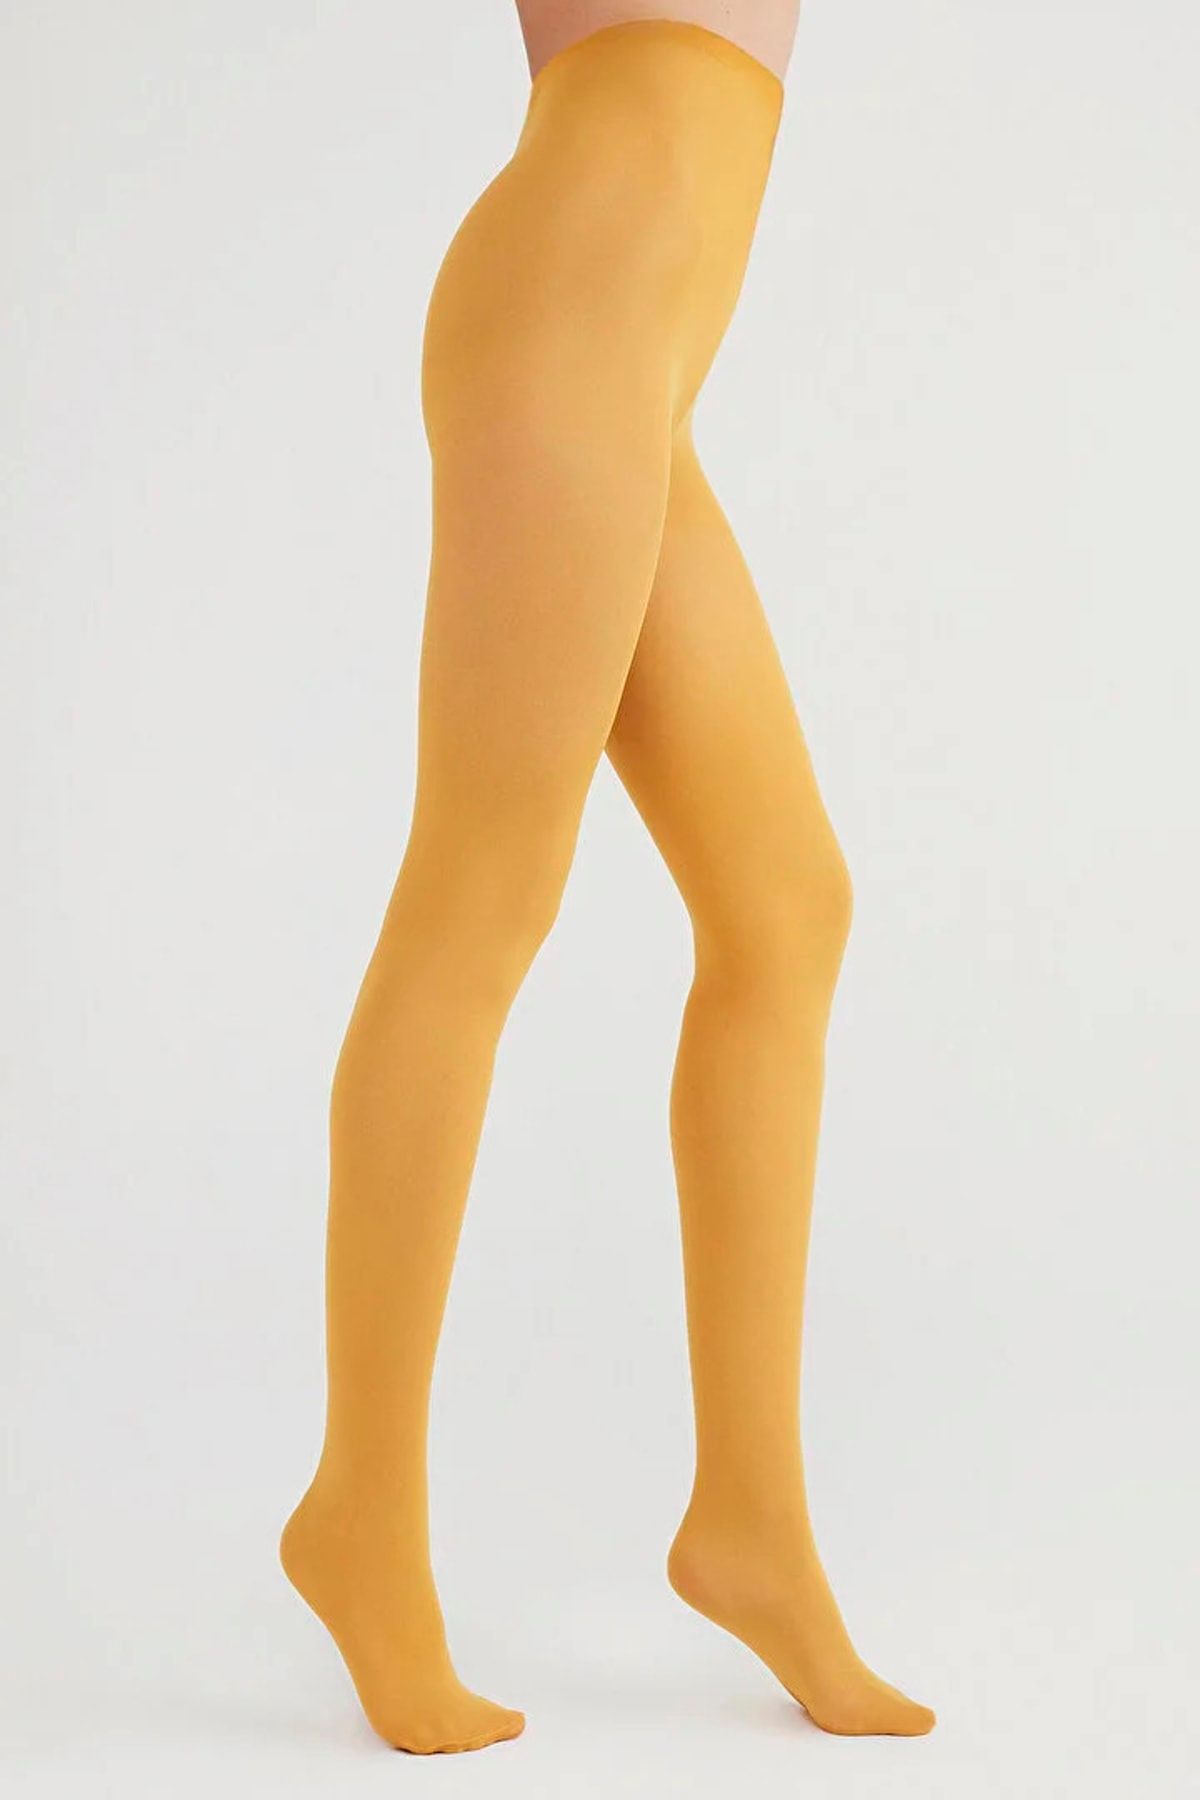 Penti Kadın Ayçiçek Sarısı Mikro 40 Denye Külotlu Çorap